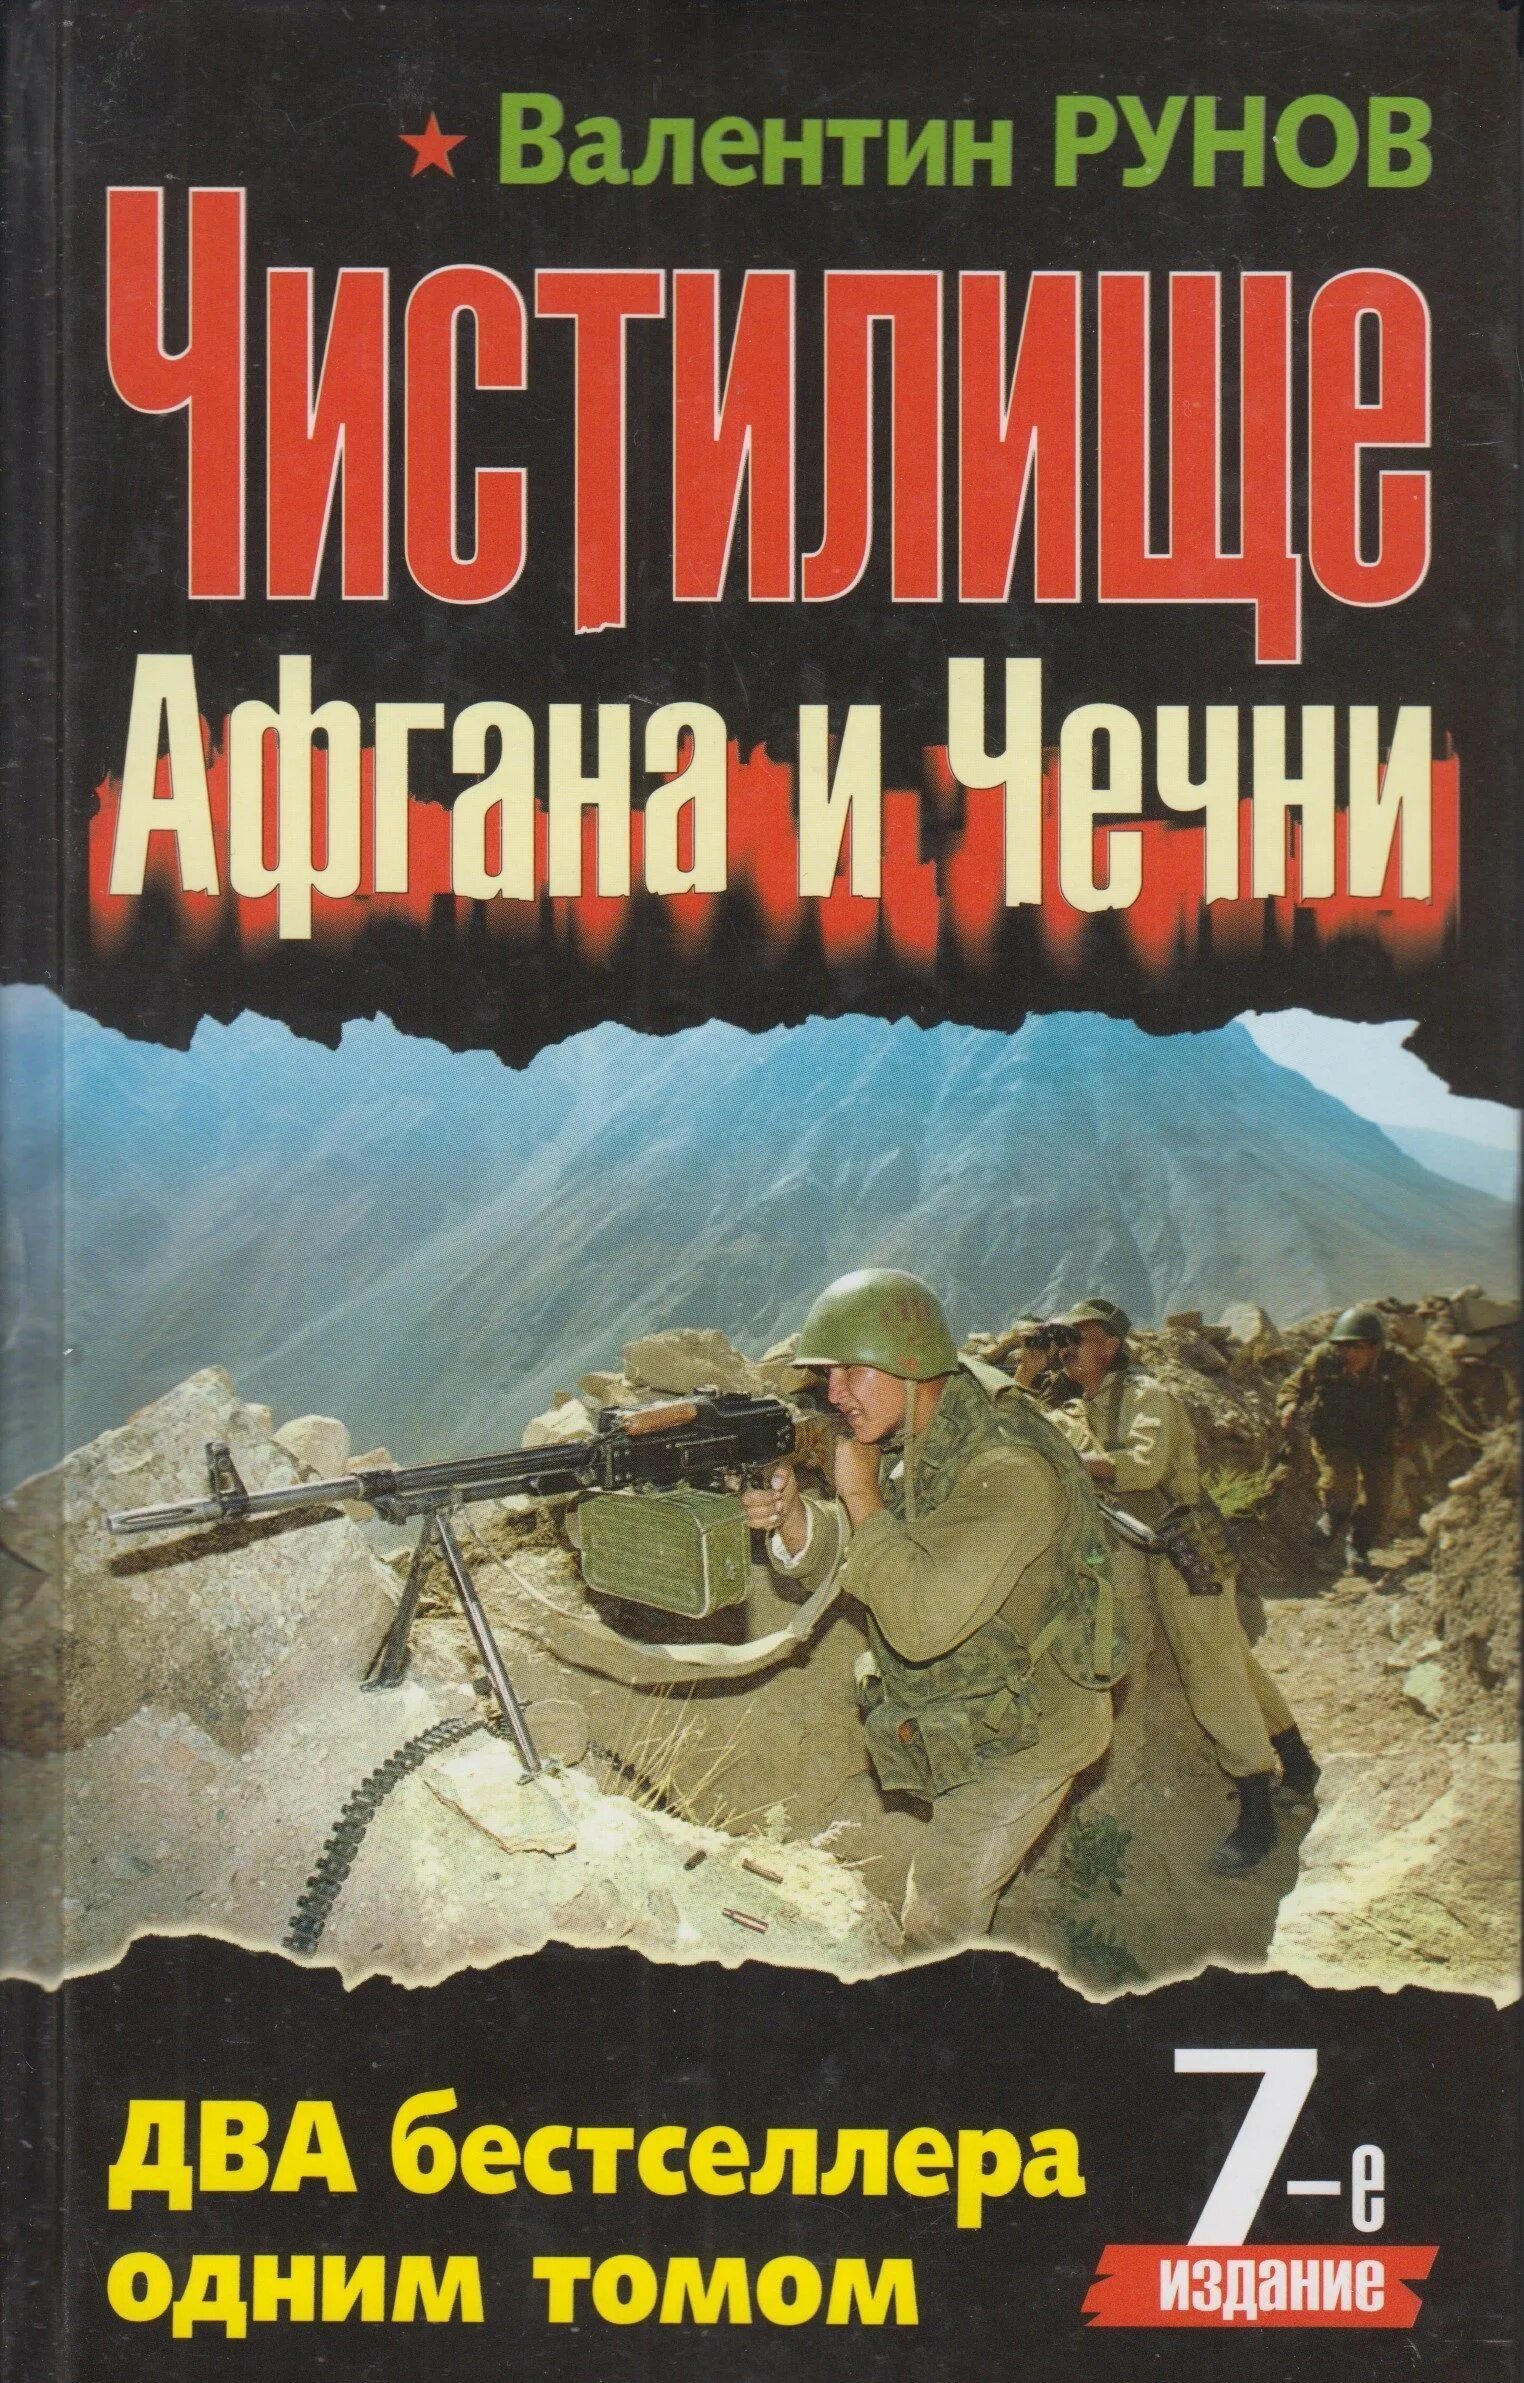 Чистилище Афгана и Чечни книга. Книги о войне в Чечне. Читать про чечни